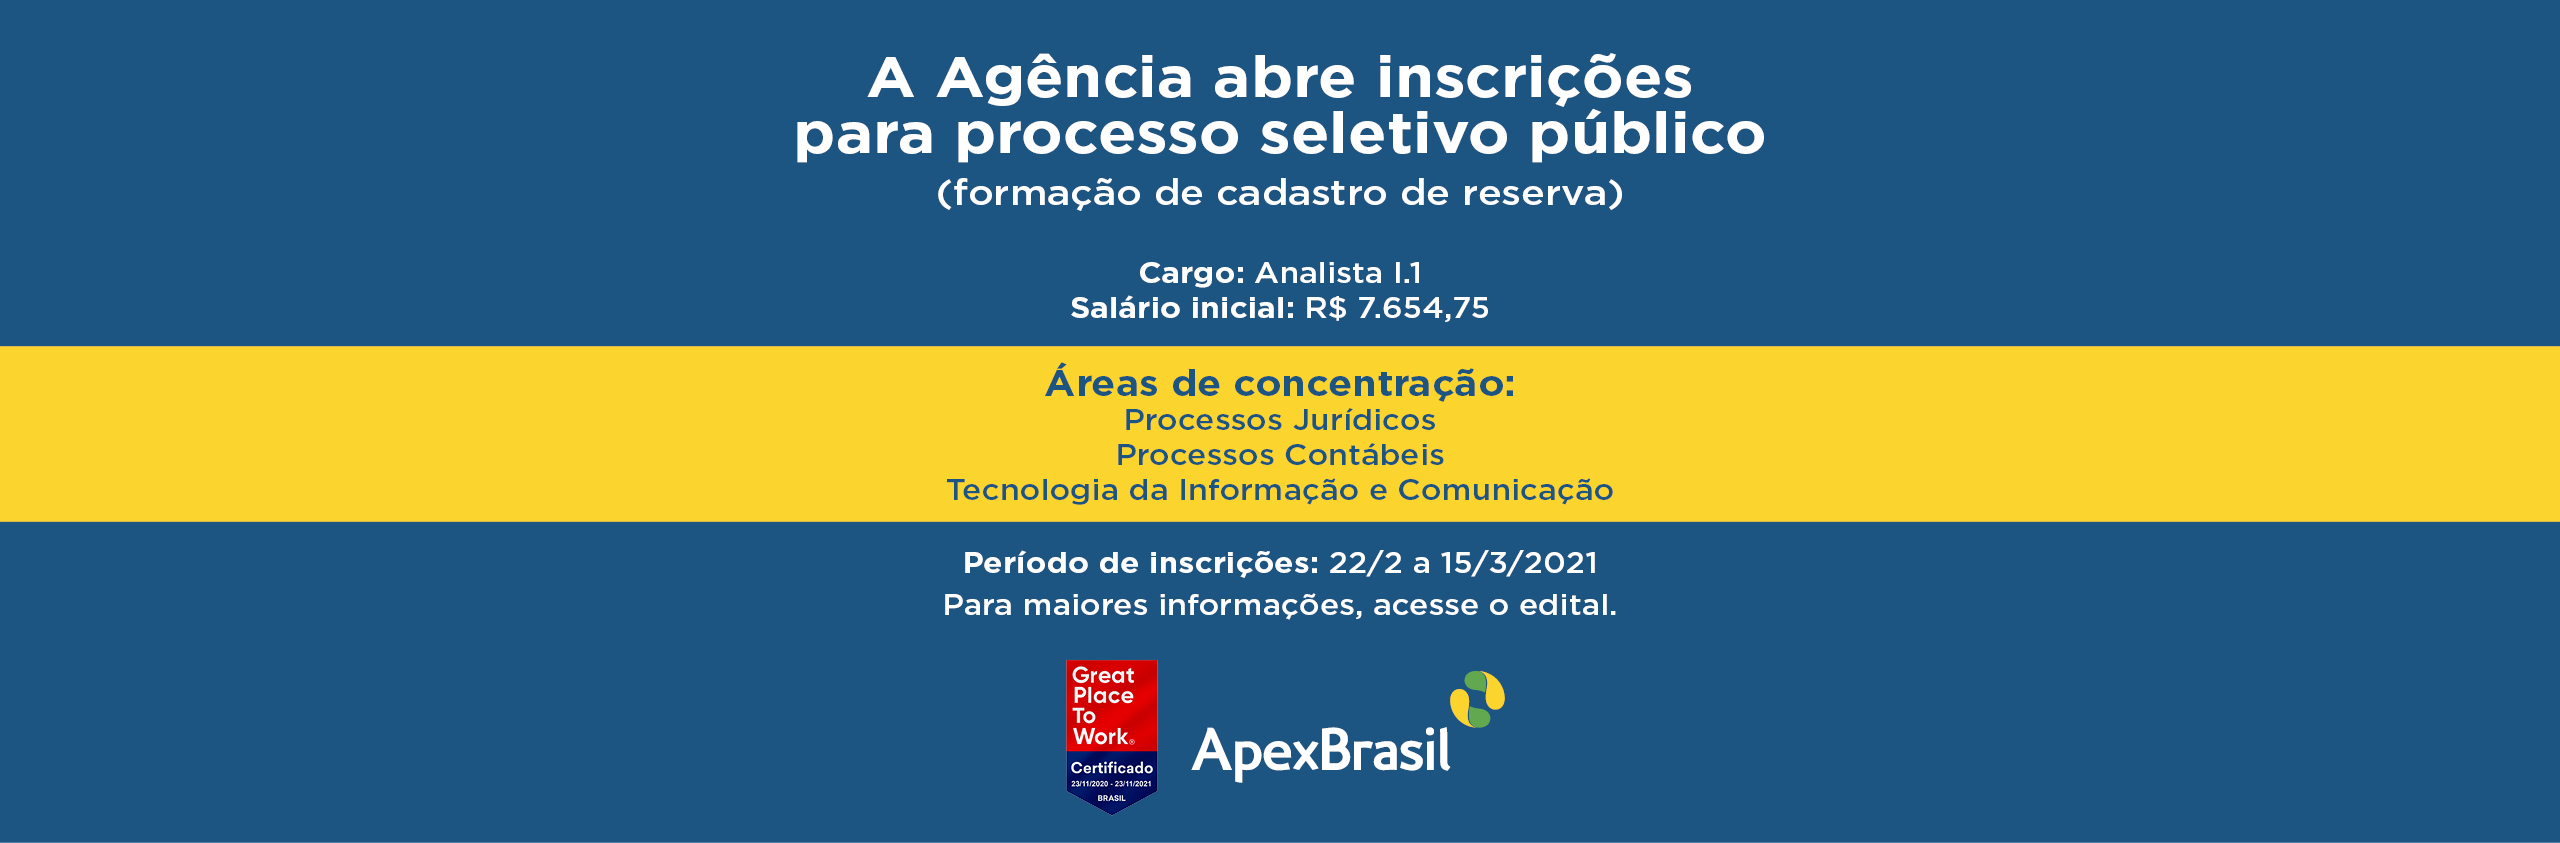 Apex-Brasil abre inscrições para processo seletivo público